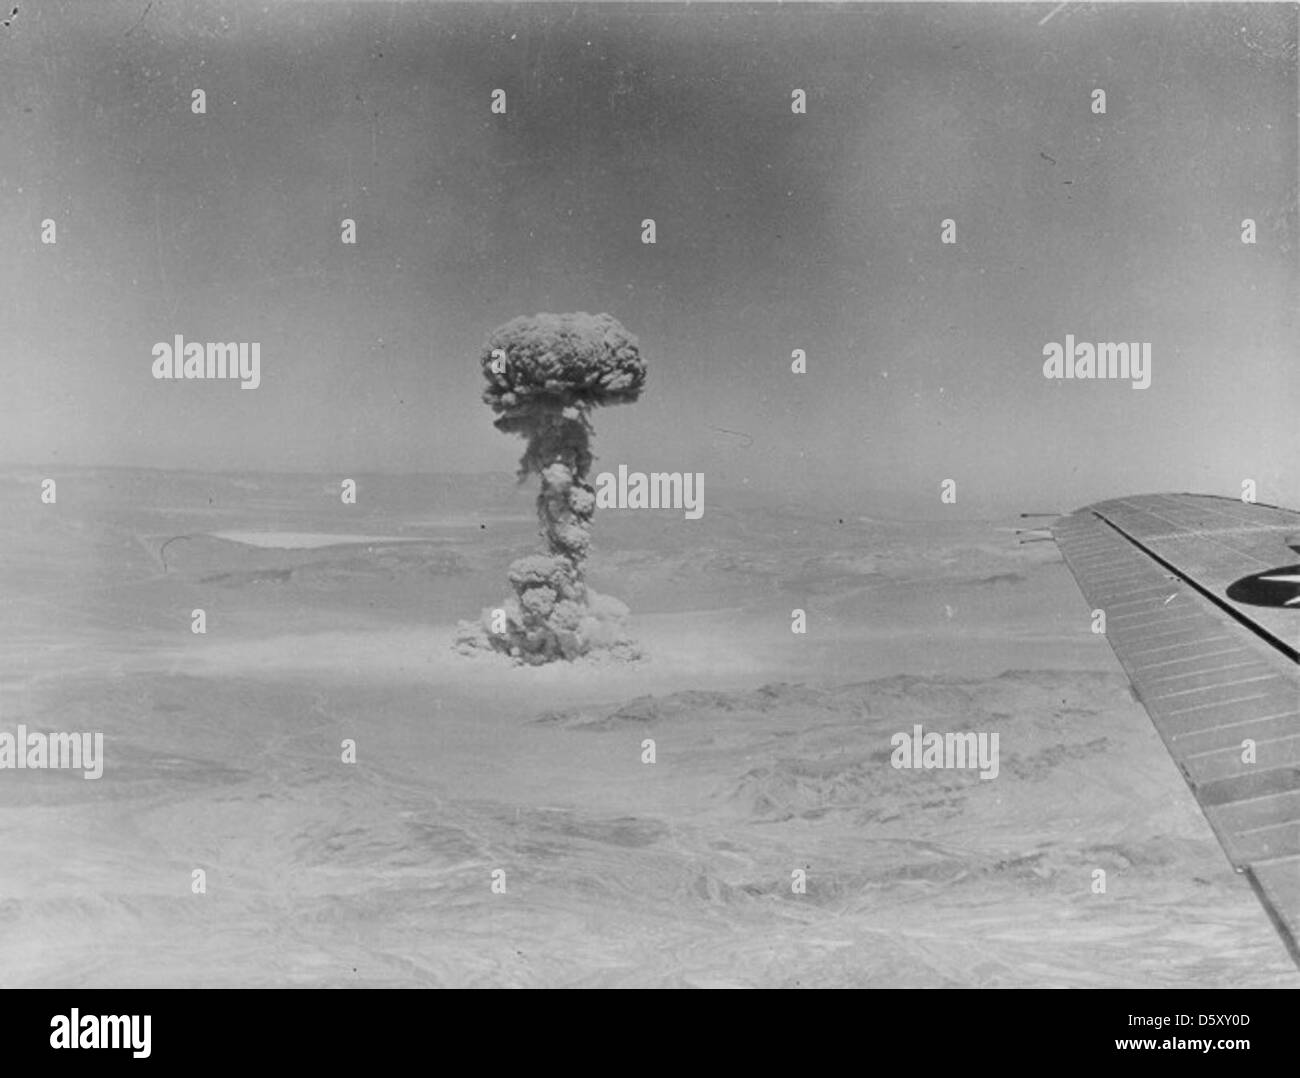 Funzionamento teiera - 'Set' (effetti militari test) - Alto livello di vista del 15 aprile 1955 test atomico al Nevada test site fotografati da un US Air Force piano fotografico. codice nome 'met' (effetti militari prova). Foto Stock